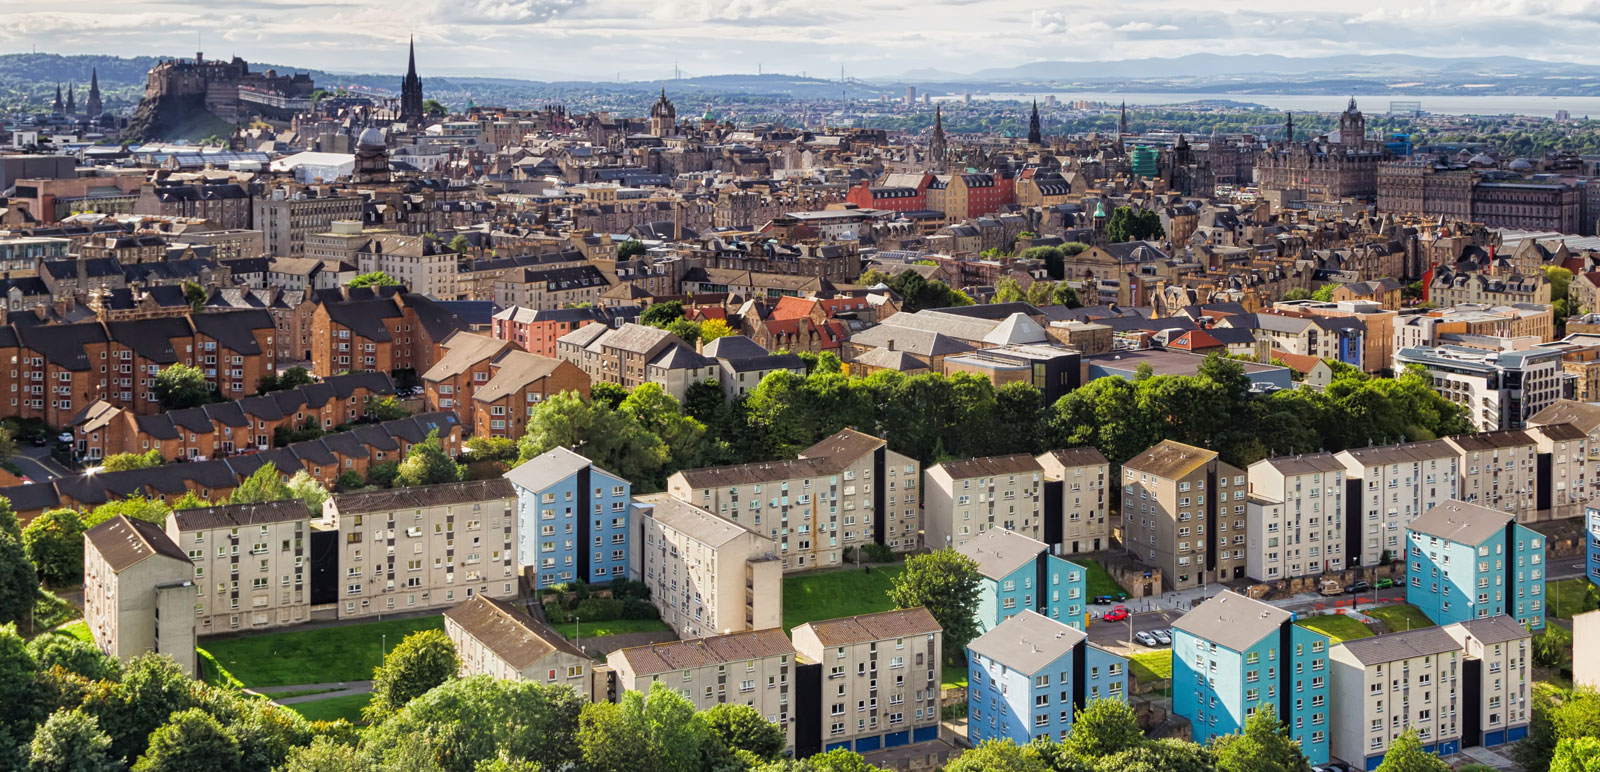 an aerial view of Edinburgh city